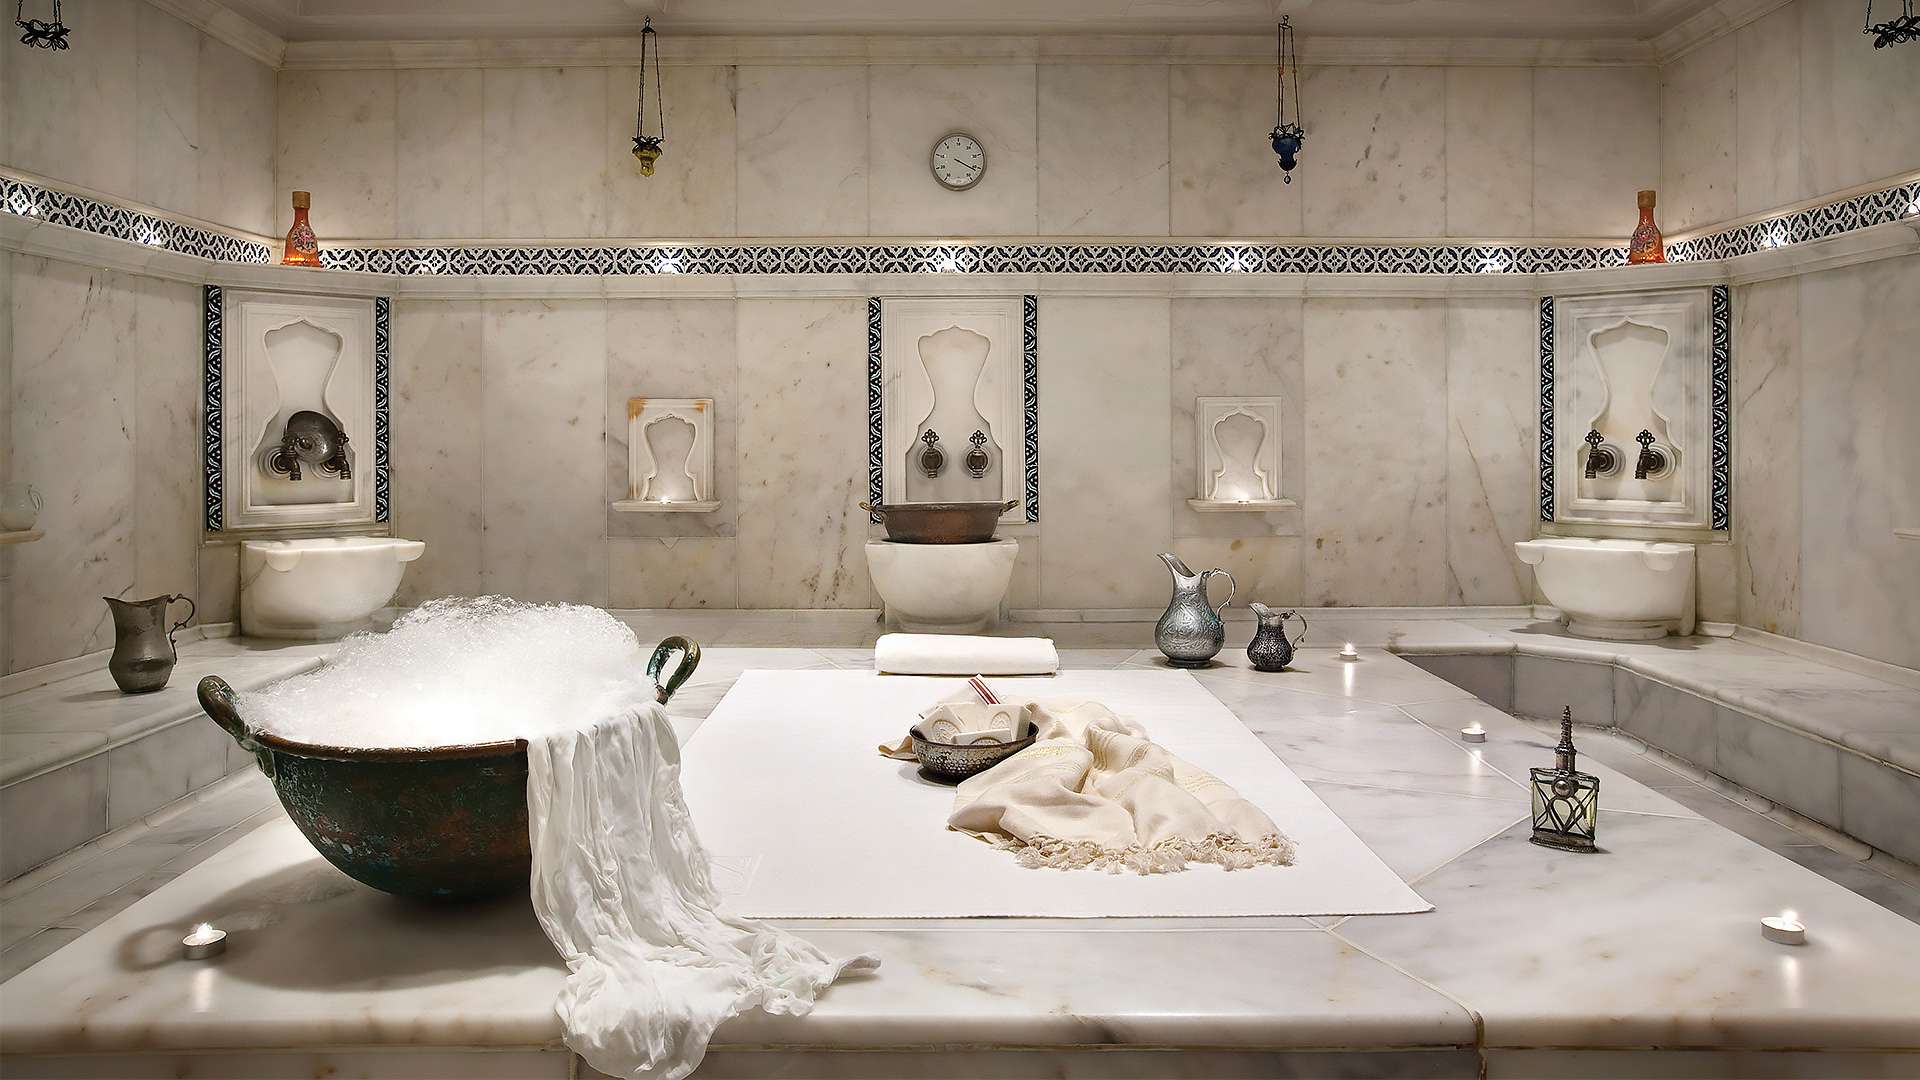 Турецкая баня: внутренняя отделка и особенности проектирования, хамам фото